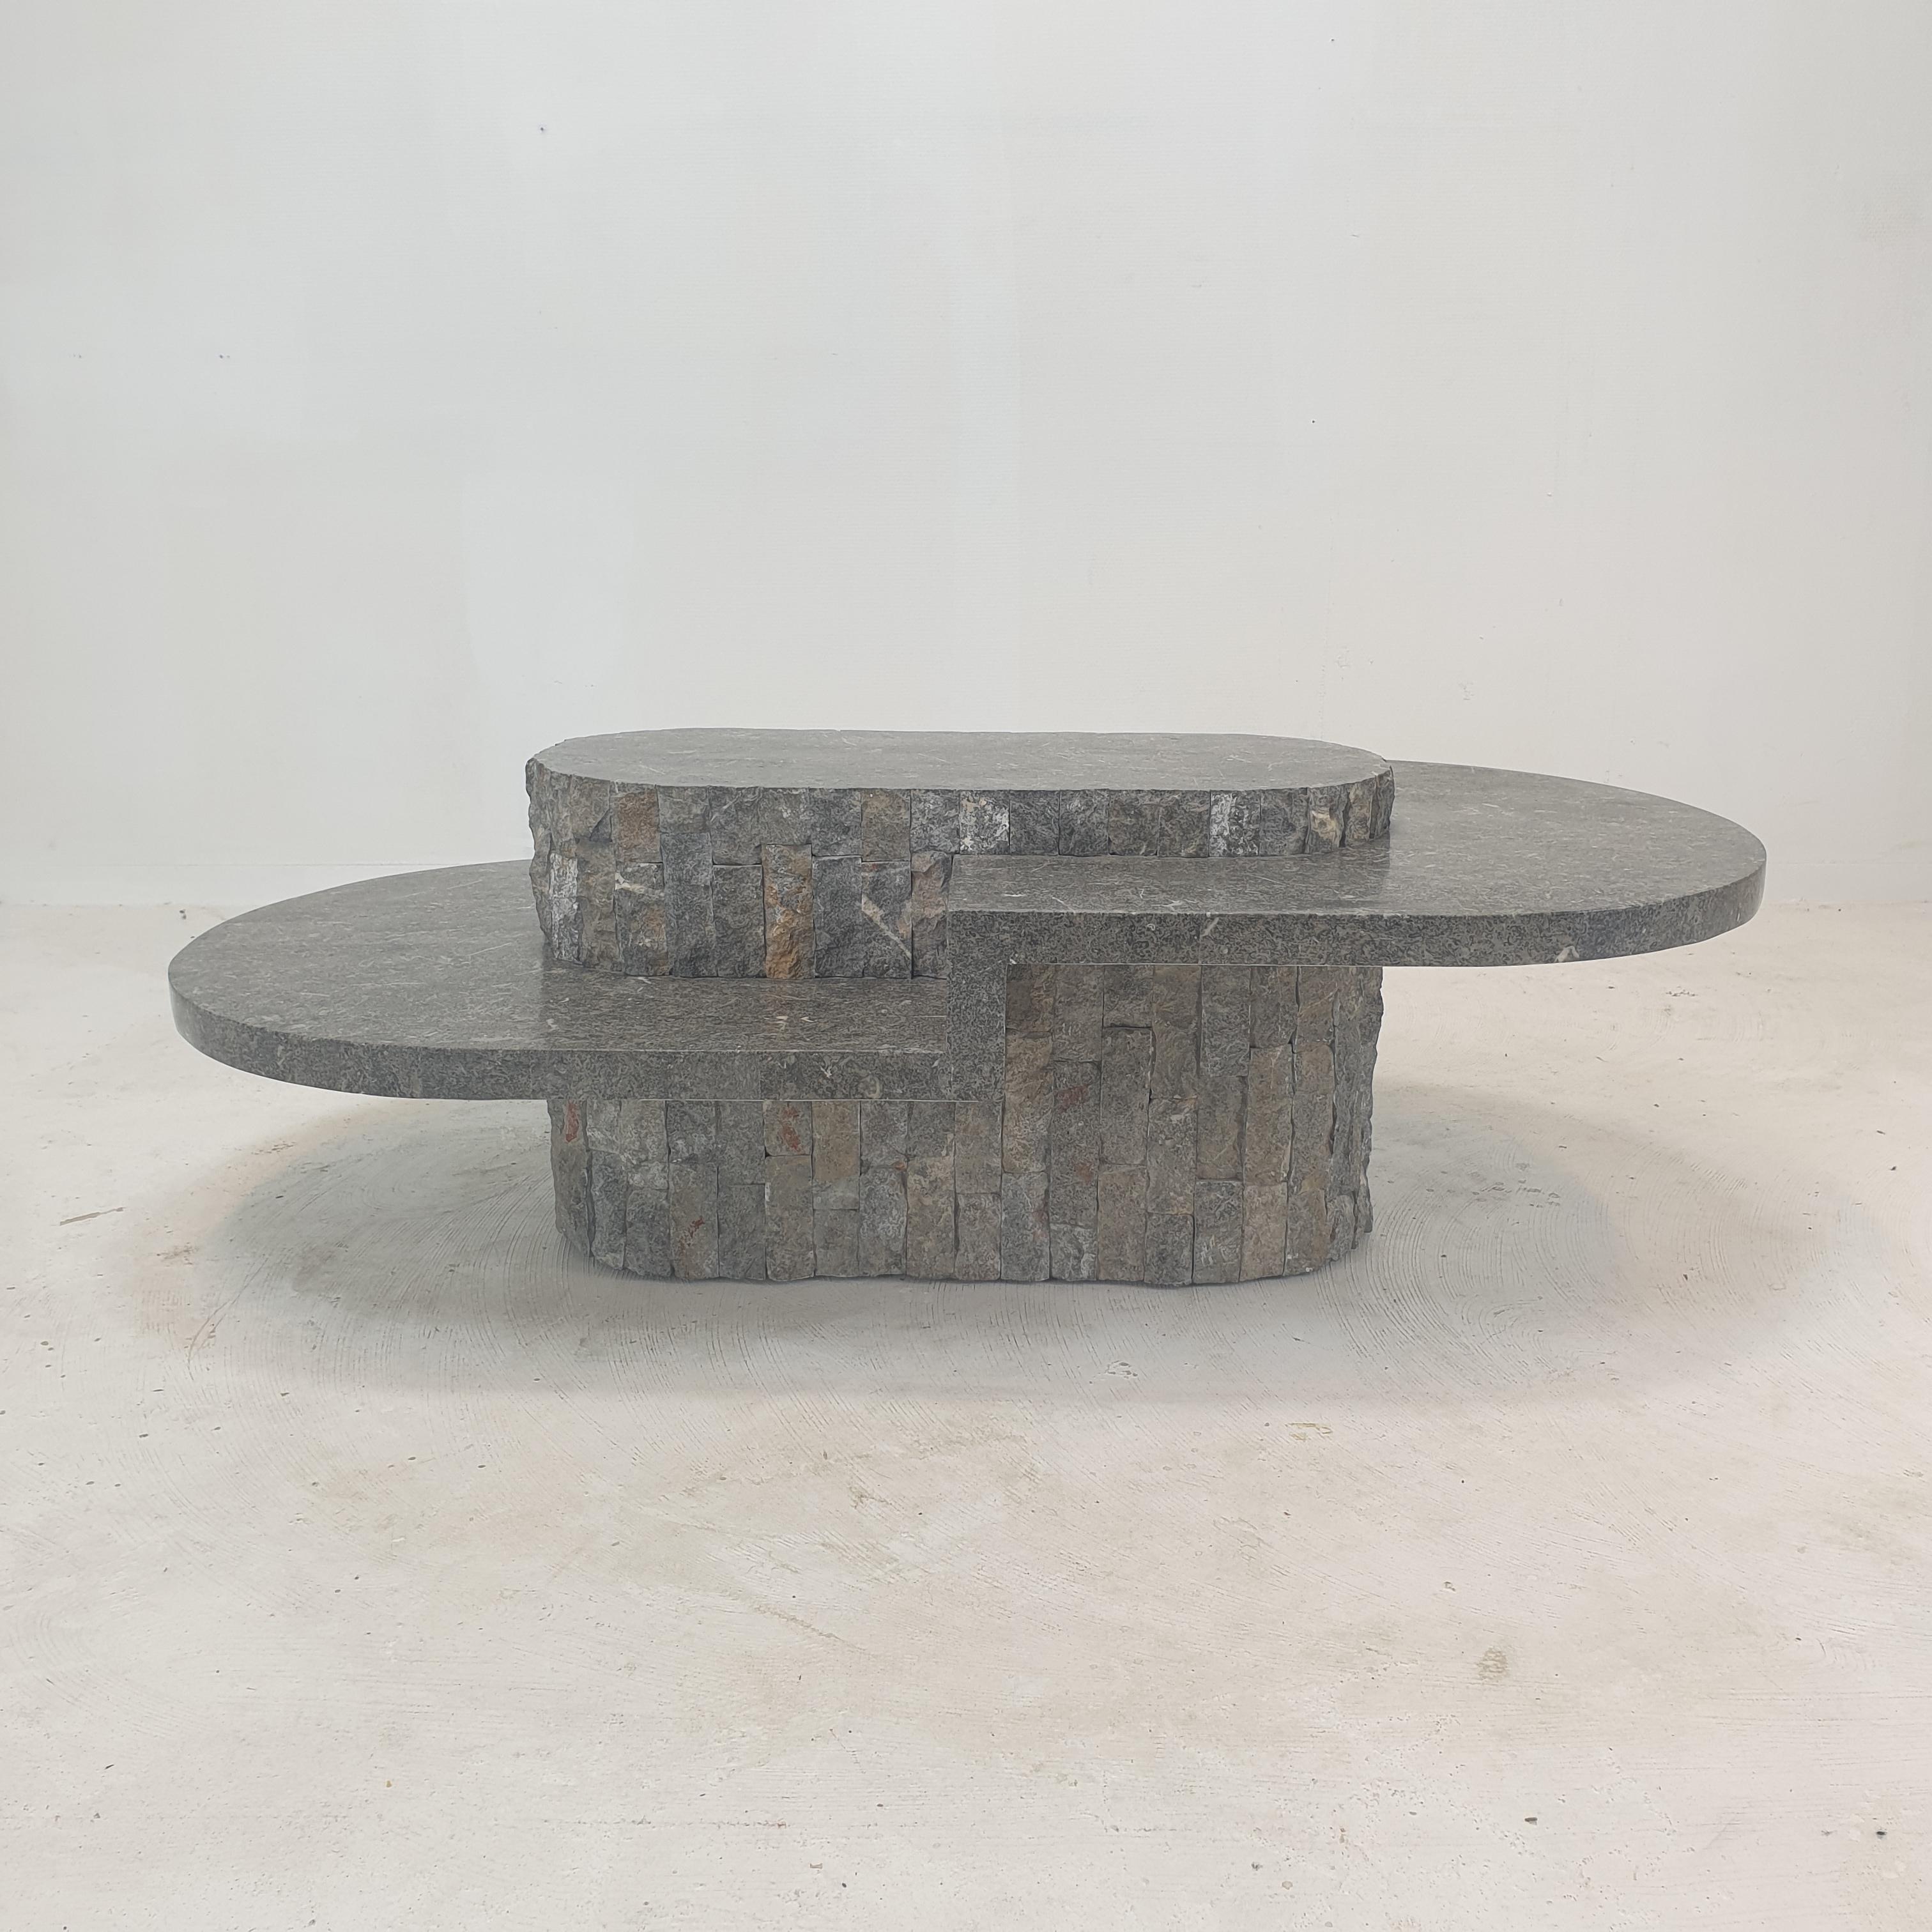 Rare et très belle table basse ou d'appoint ovale par Magnussen Ponte, années 1980.

Cette table étonnante est fabriquée en pierre de Mactan ou en pierre fossile, un motif de brique aux bords rugueux.

C'est une pièce unique !

Nous